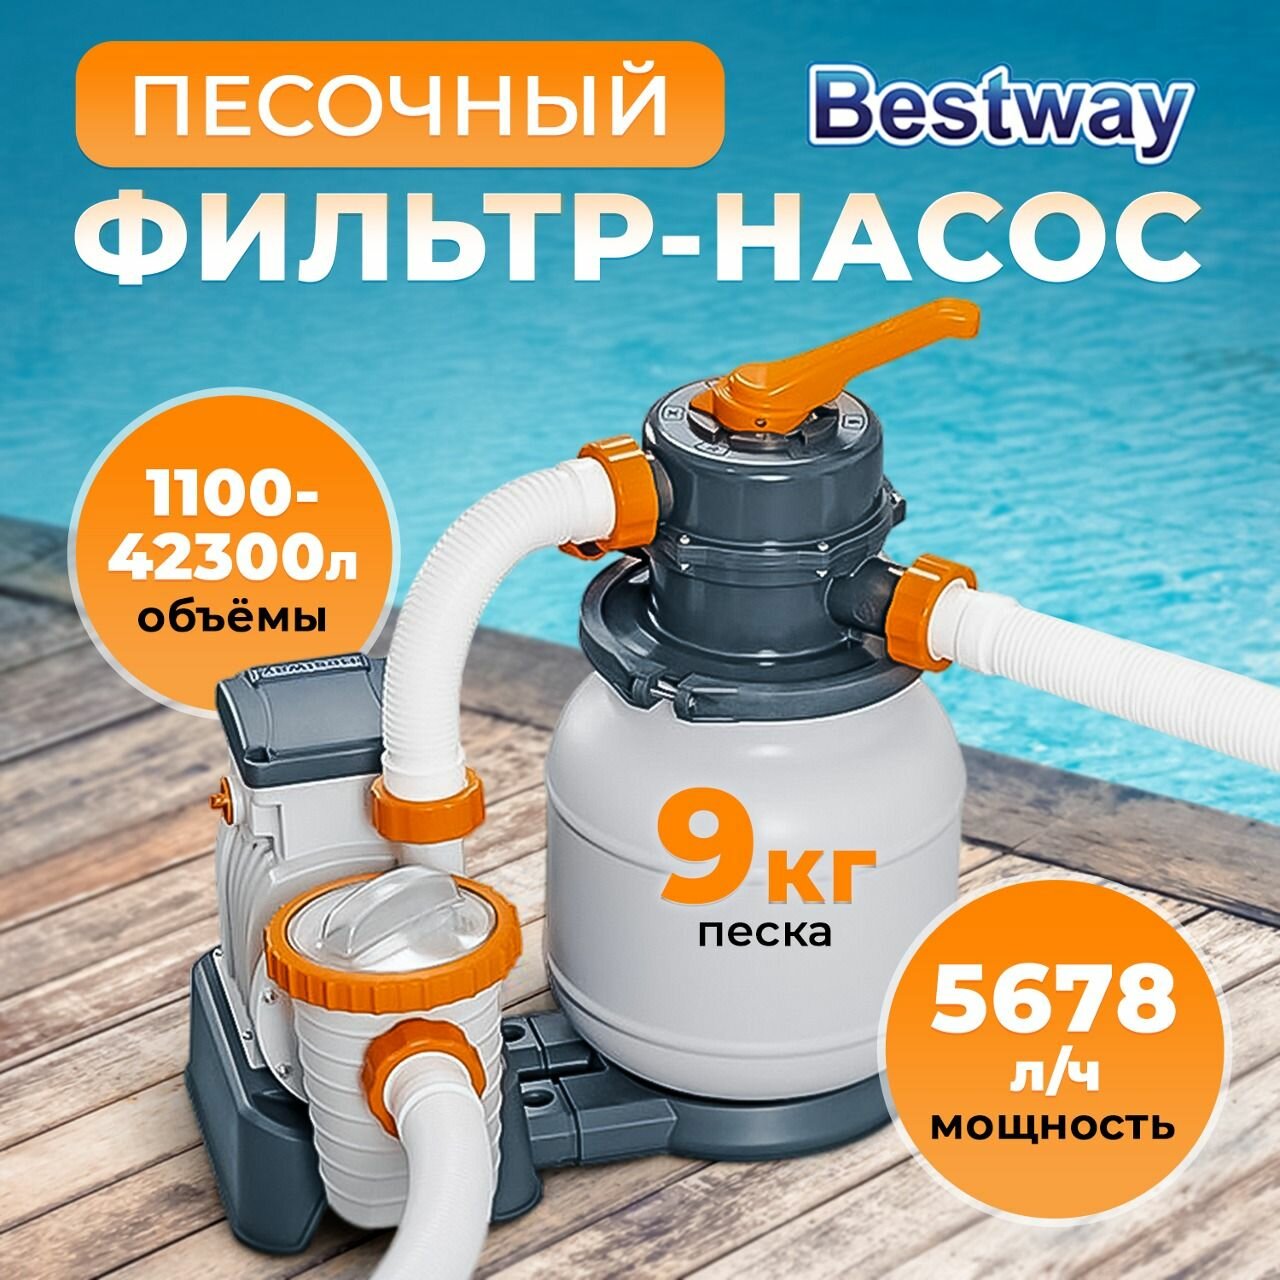 Фильтр-насос для бассейна Bestway песочный, производительность 5678 л/ч, напольный и электрический